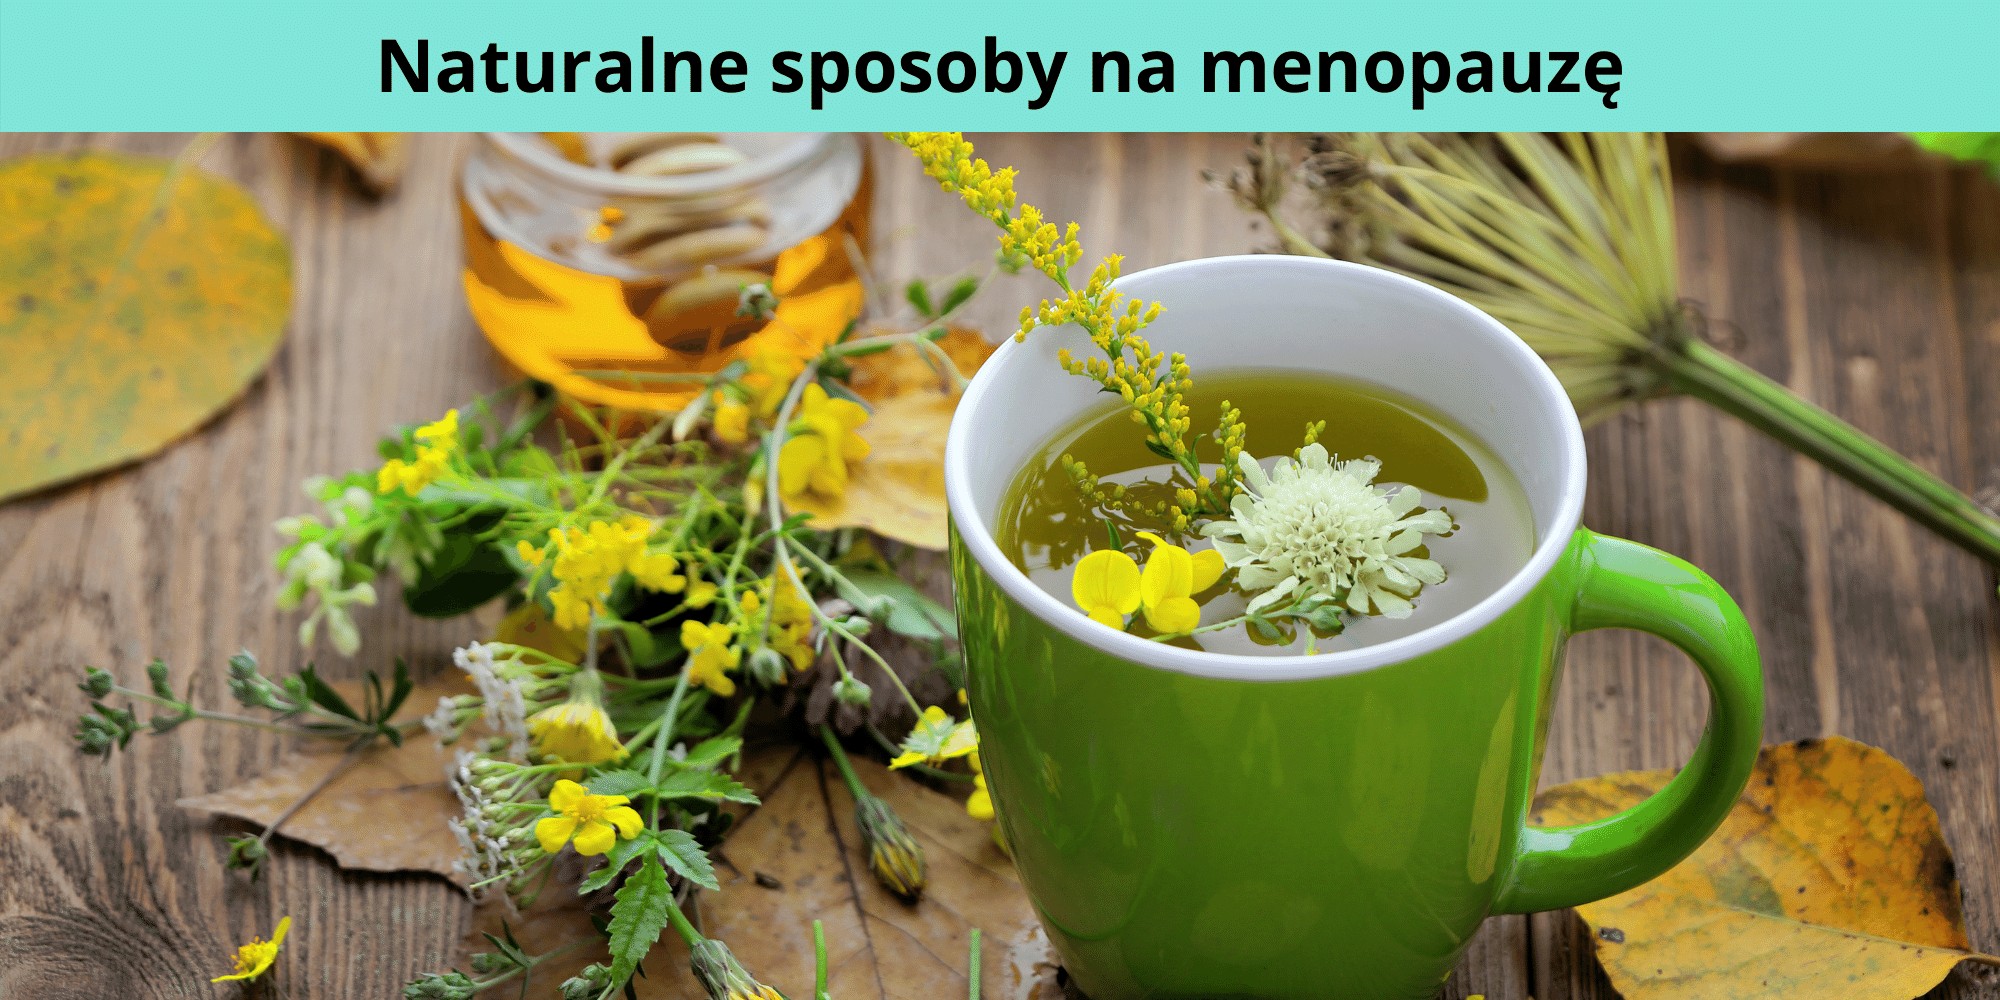 Naturalne sposoby na menopauzę